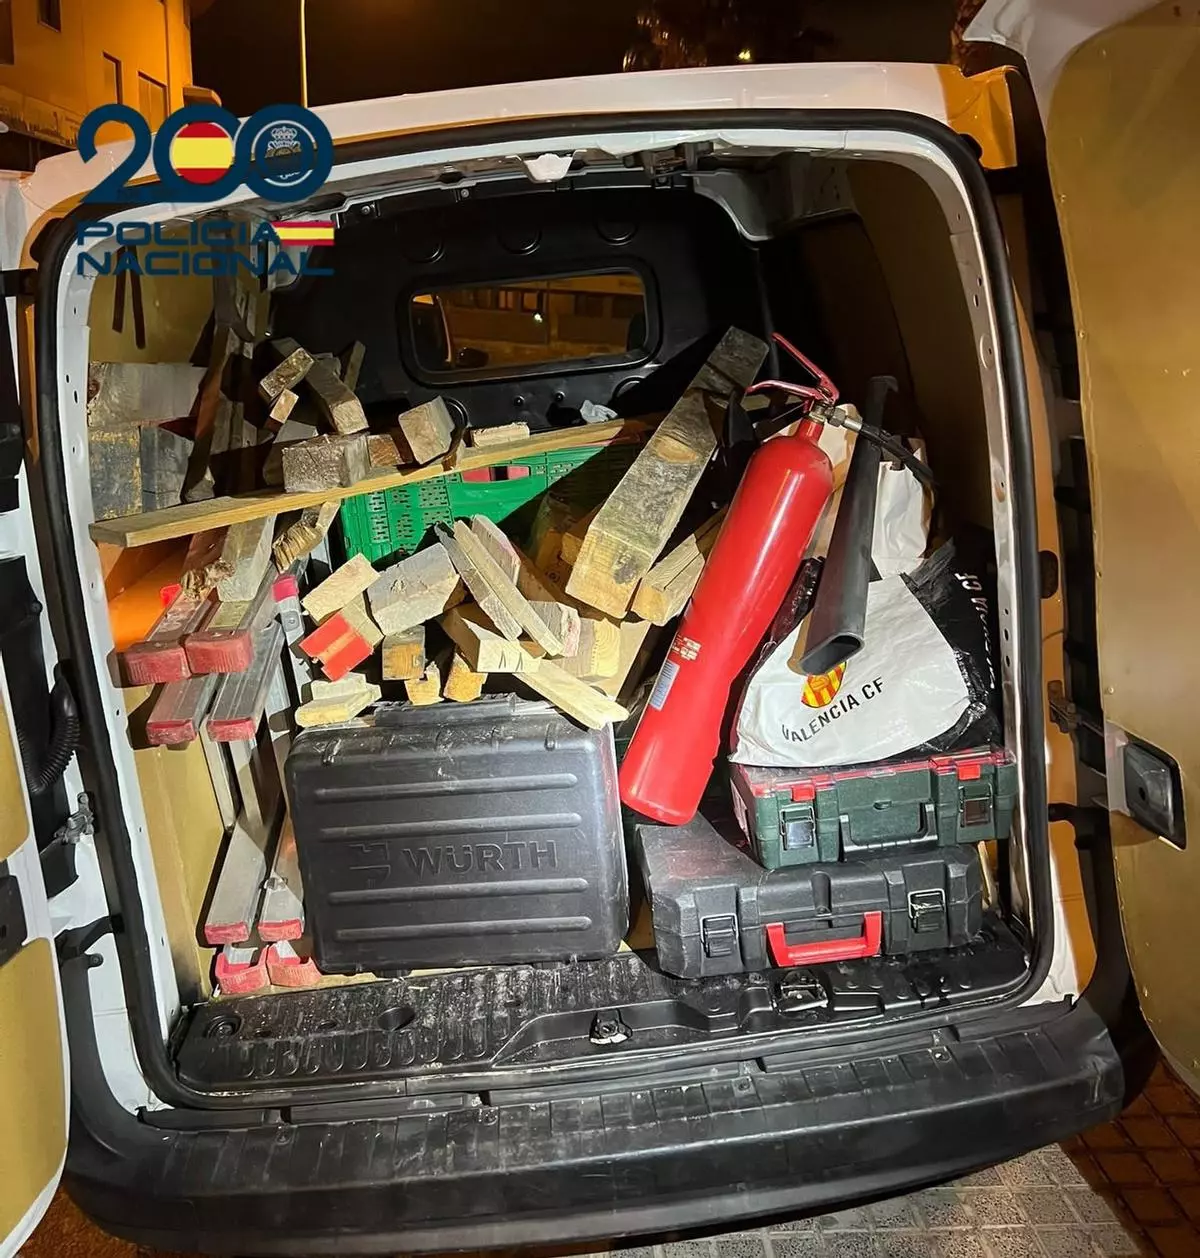 Pillado 'in fraganti' un vigilante de seguridad en Las Palmas de Gran Canaria por robo en una obra en construcción